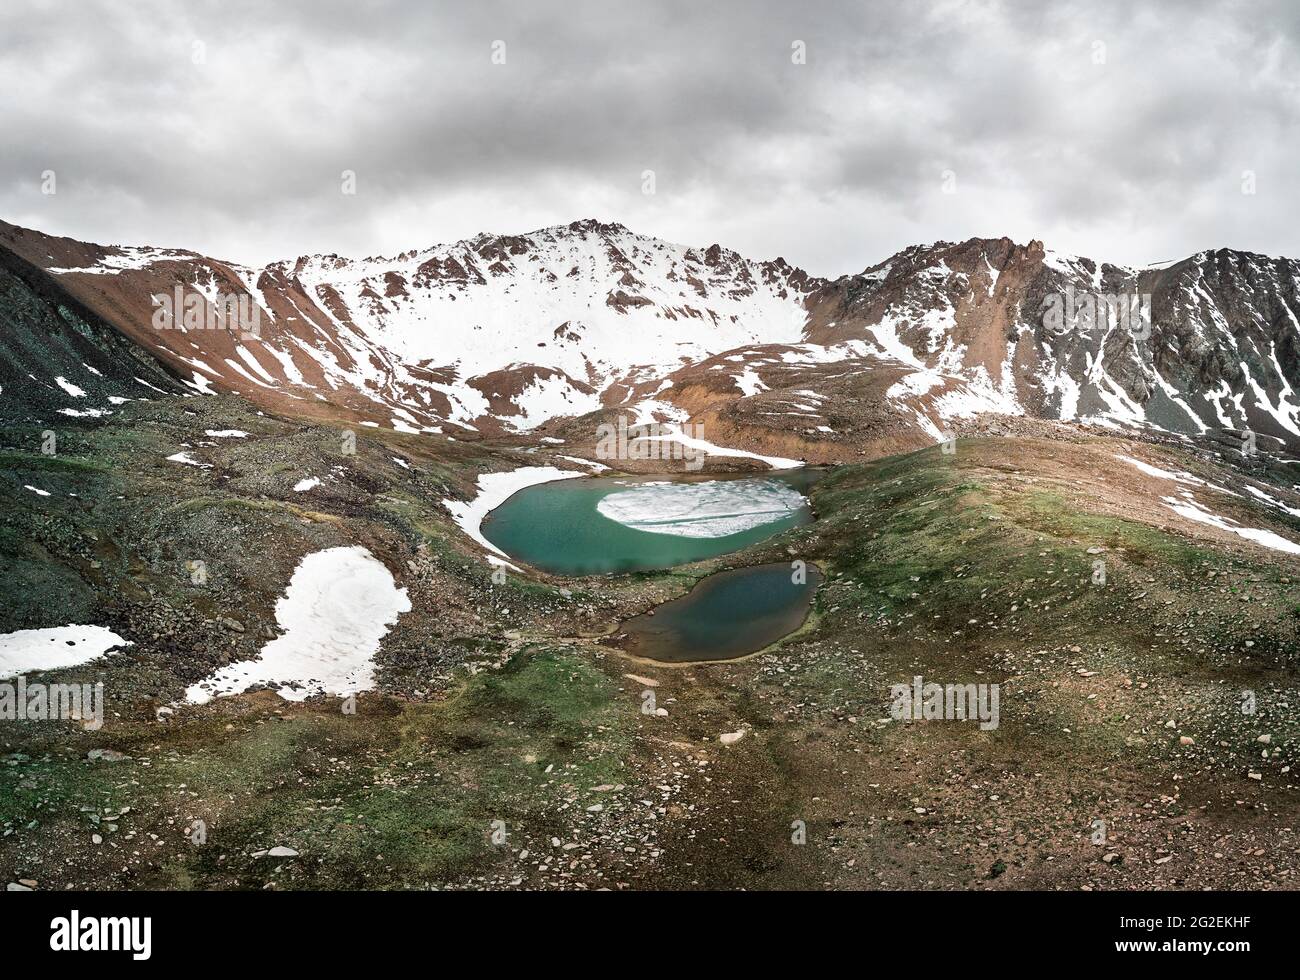 Magnifique paysage des lacs de montagne des glaciers près de la ville d'Almaty, Kazakhstan. Prise de vue aérienne avec un drone Banque D'Images